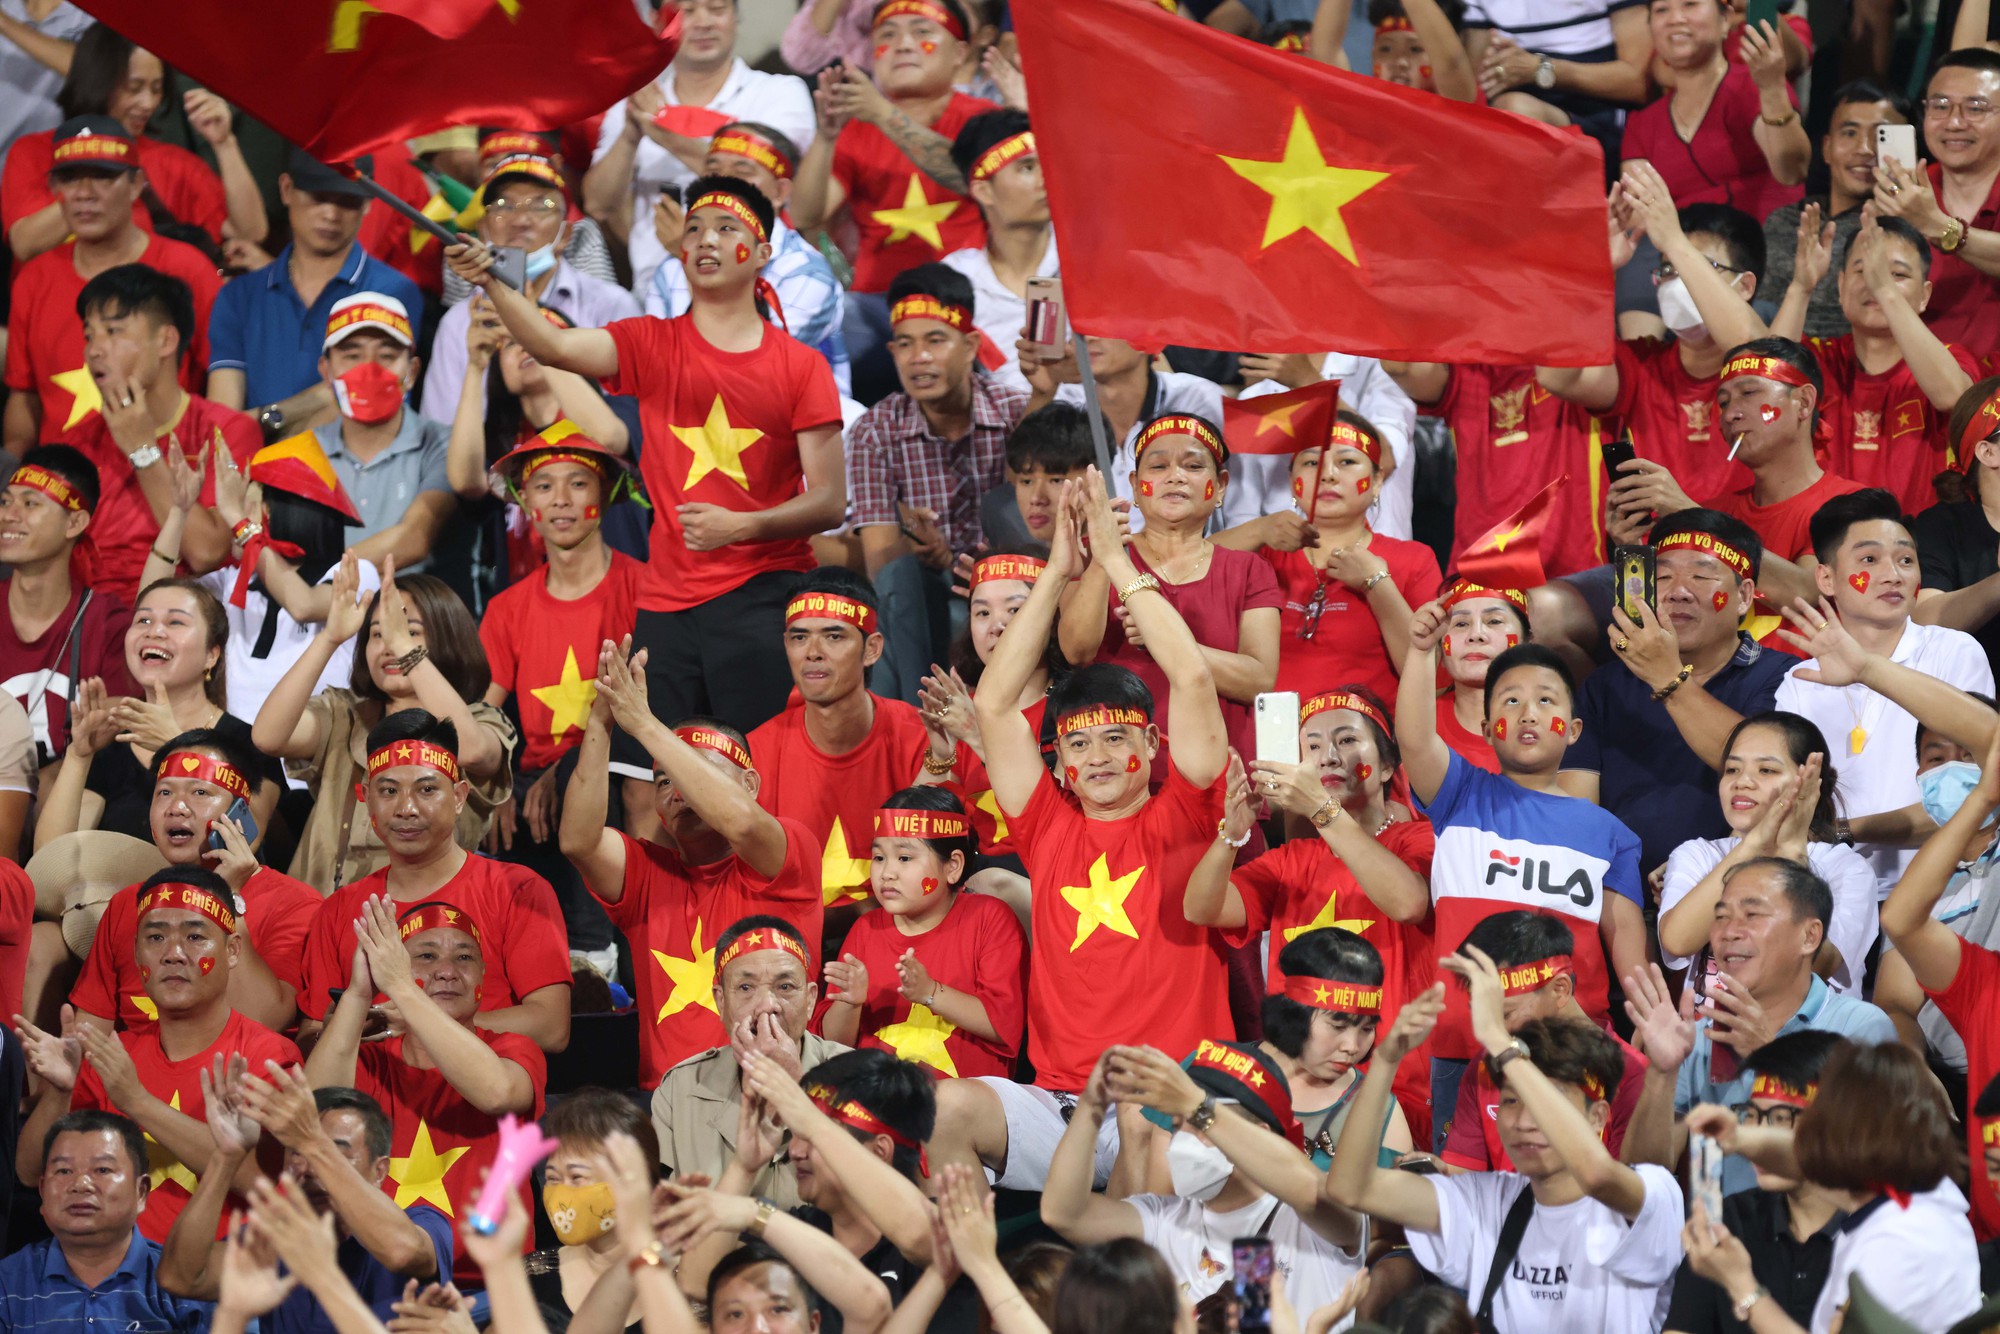 Dành tặng những hình ảnh đậm chất bóng đá của đội tuyển U23 Việt Nam cho các fan hâm mộ! Được chứng kiến những khoảnh khắc đầy kịch tính và đầy hứng khởi của đội bóng Việt Nam là niềm vui không thể tả trong lời!